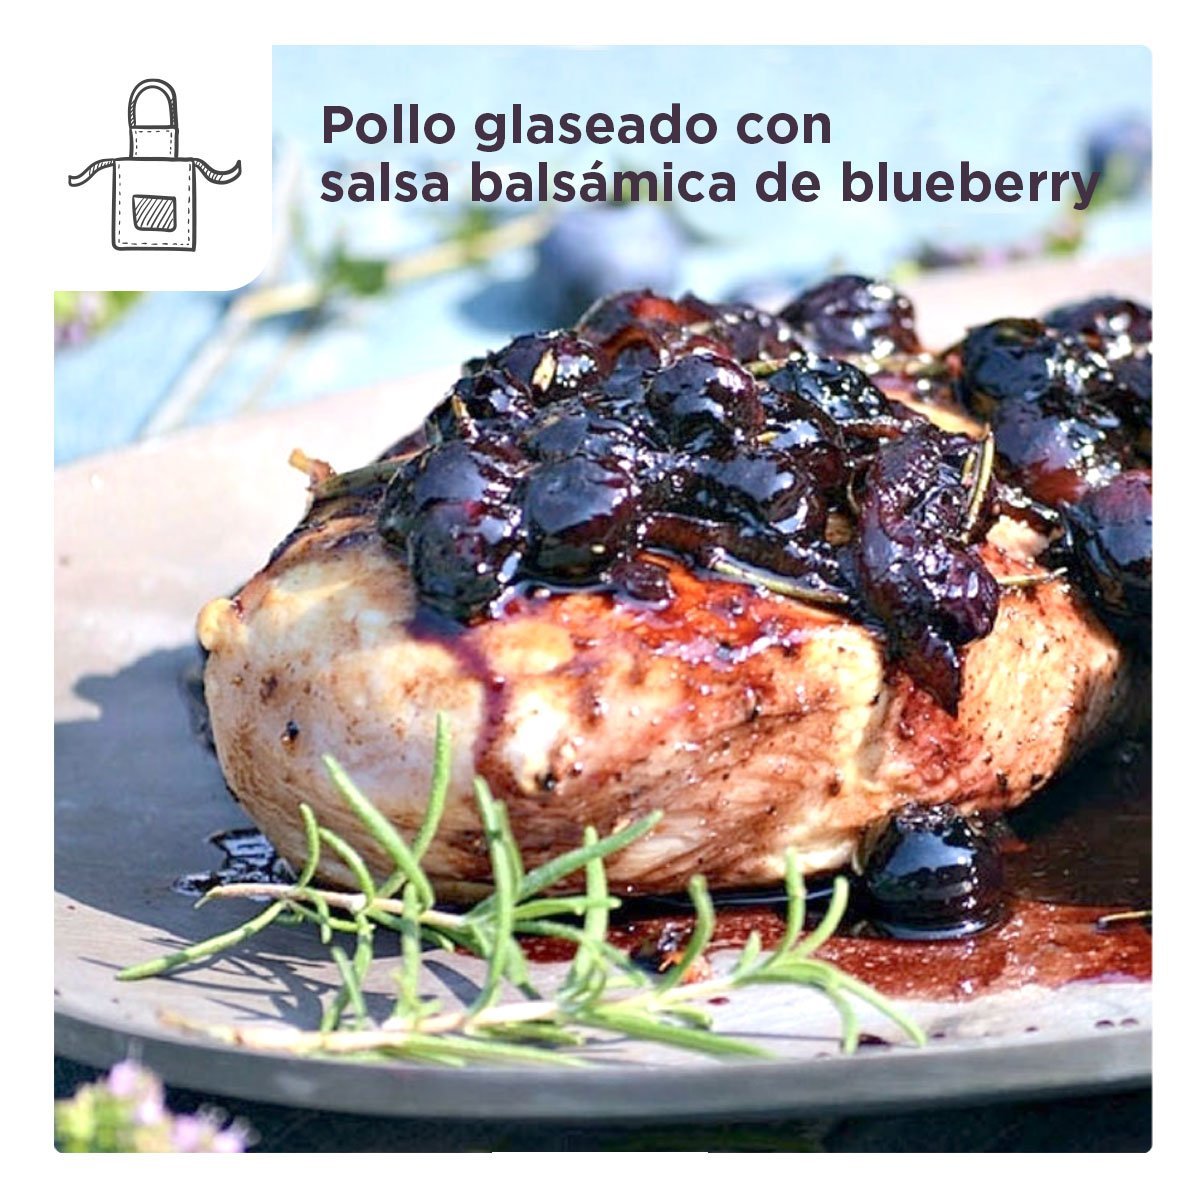 Receta pollo galseado con salsa balsámica de blueberry